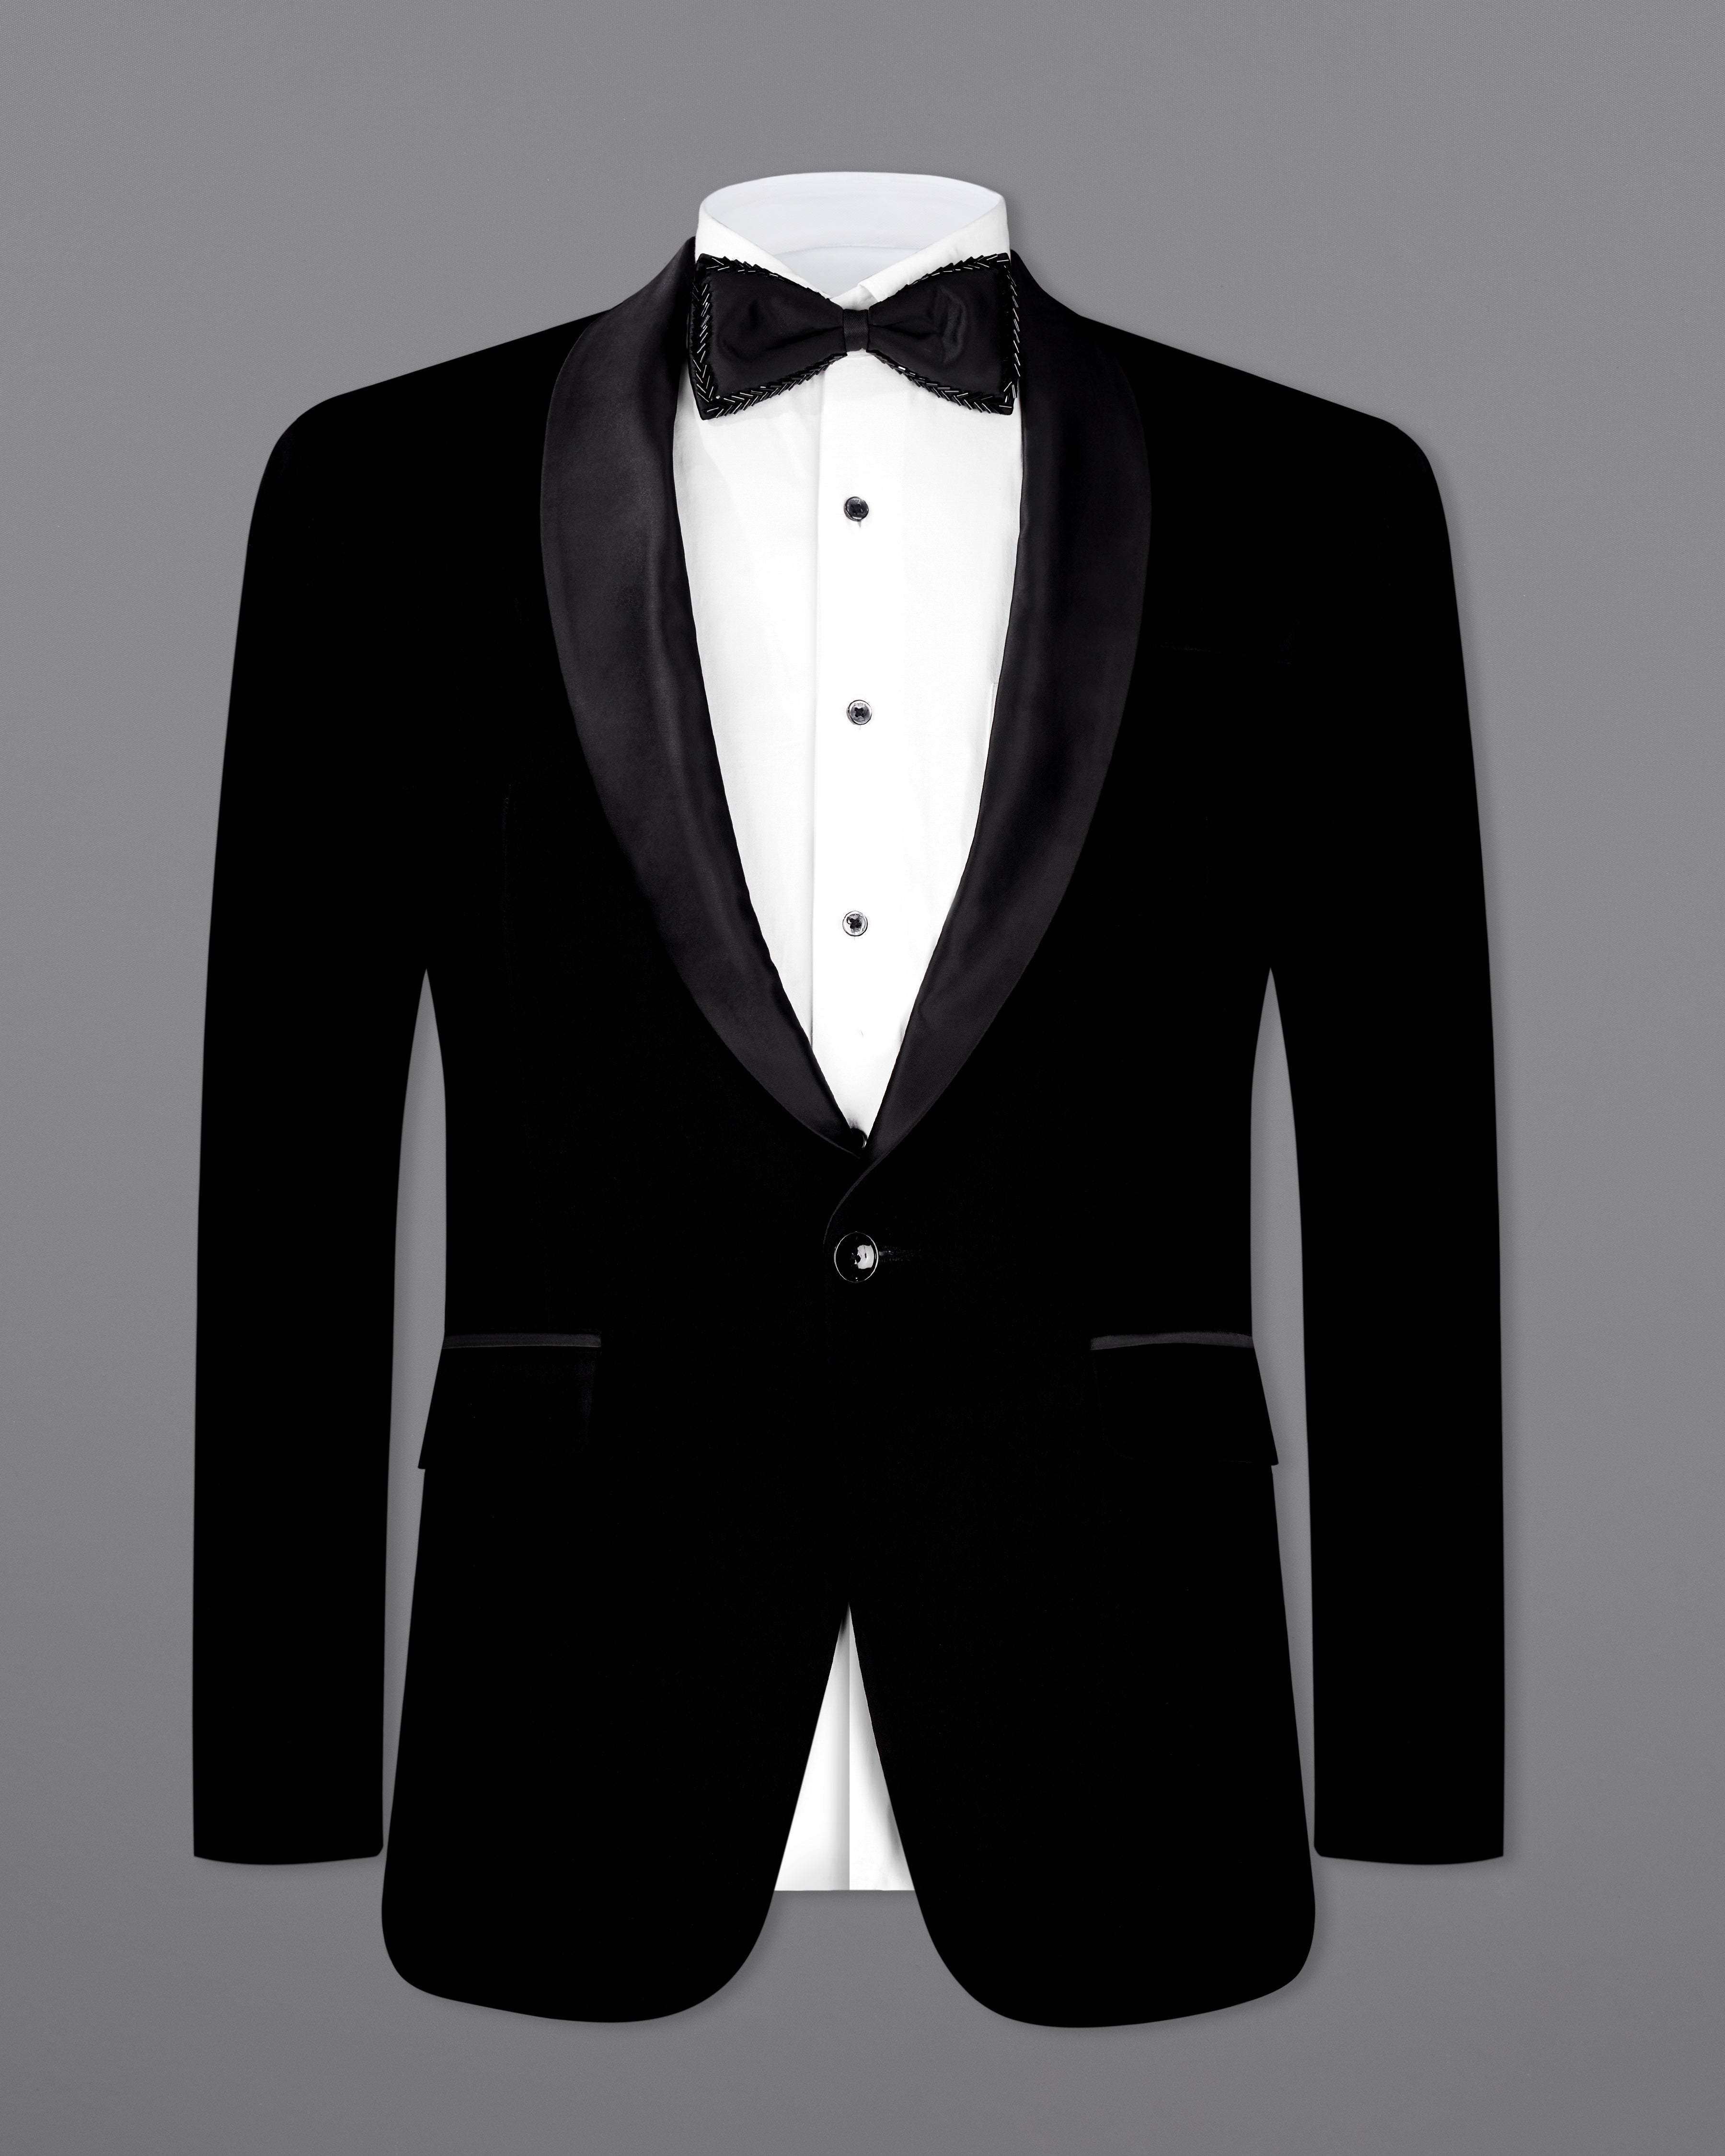 Korean Black (The Best Black We Have) Tuxedo Designer Suit ST2608-BKL-36, ST2608-BKL-38, ST2608-BKL-40, ST2608-BKL-42, ST2608-BKL-44, ST2608-BKL-46, ST2608-BKL-48, ST2608-BKL-50, ST2608-BKL-52, ST2608-BKL-54, ST2608-BKL-56, ST2608-BKL-58, ST2608-BKL-60